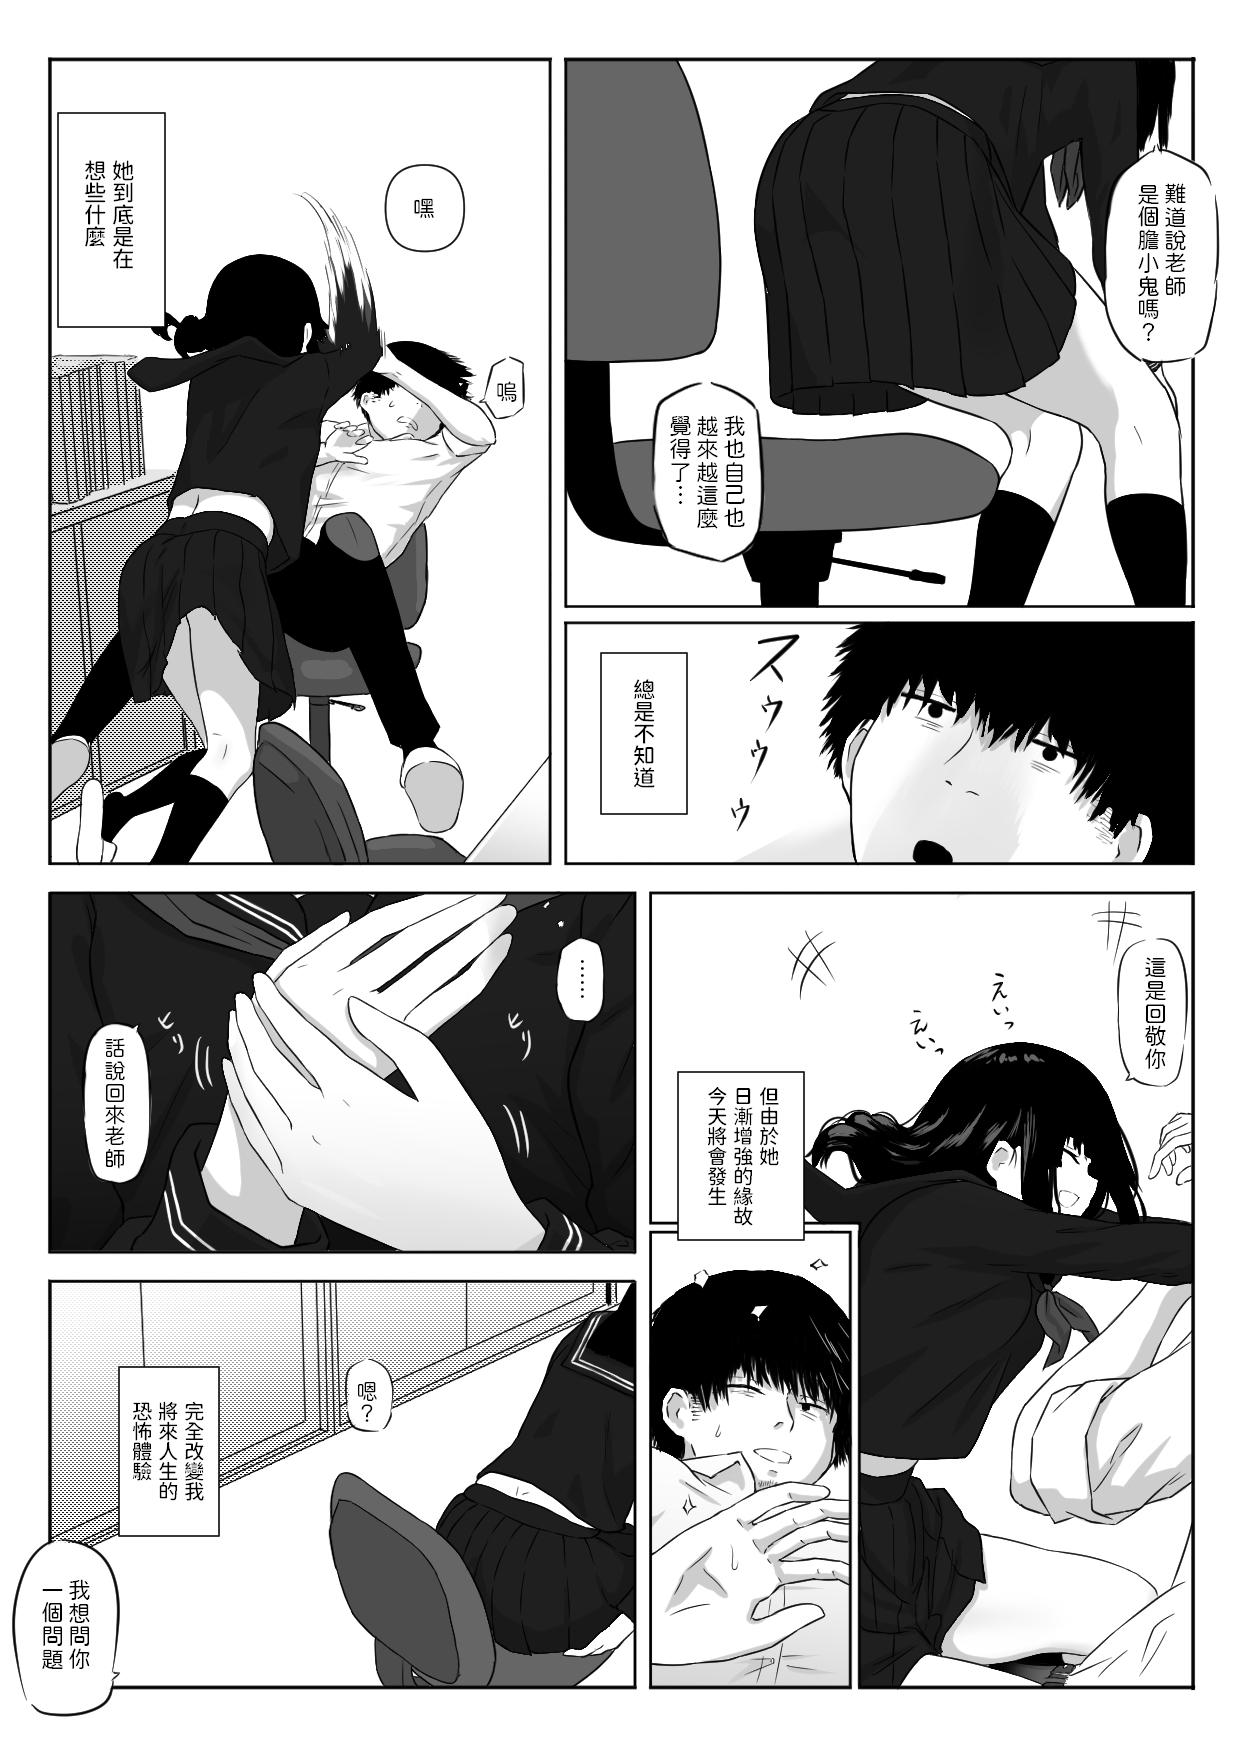 Interacial Watashi wa Yuurei desu. - Original Femboy - Page 4